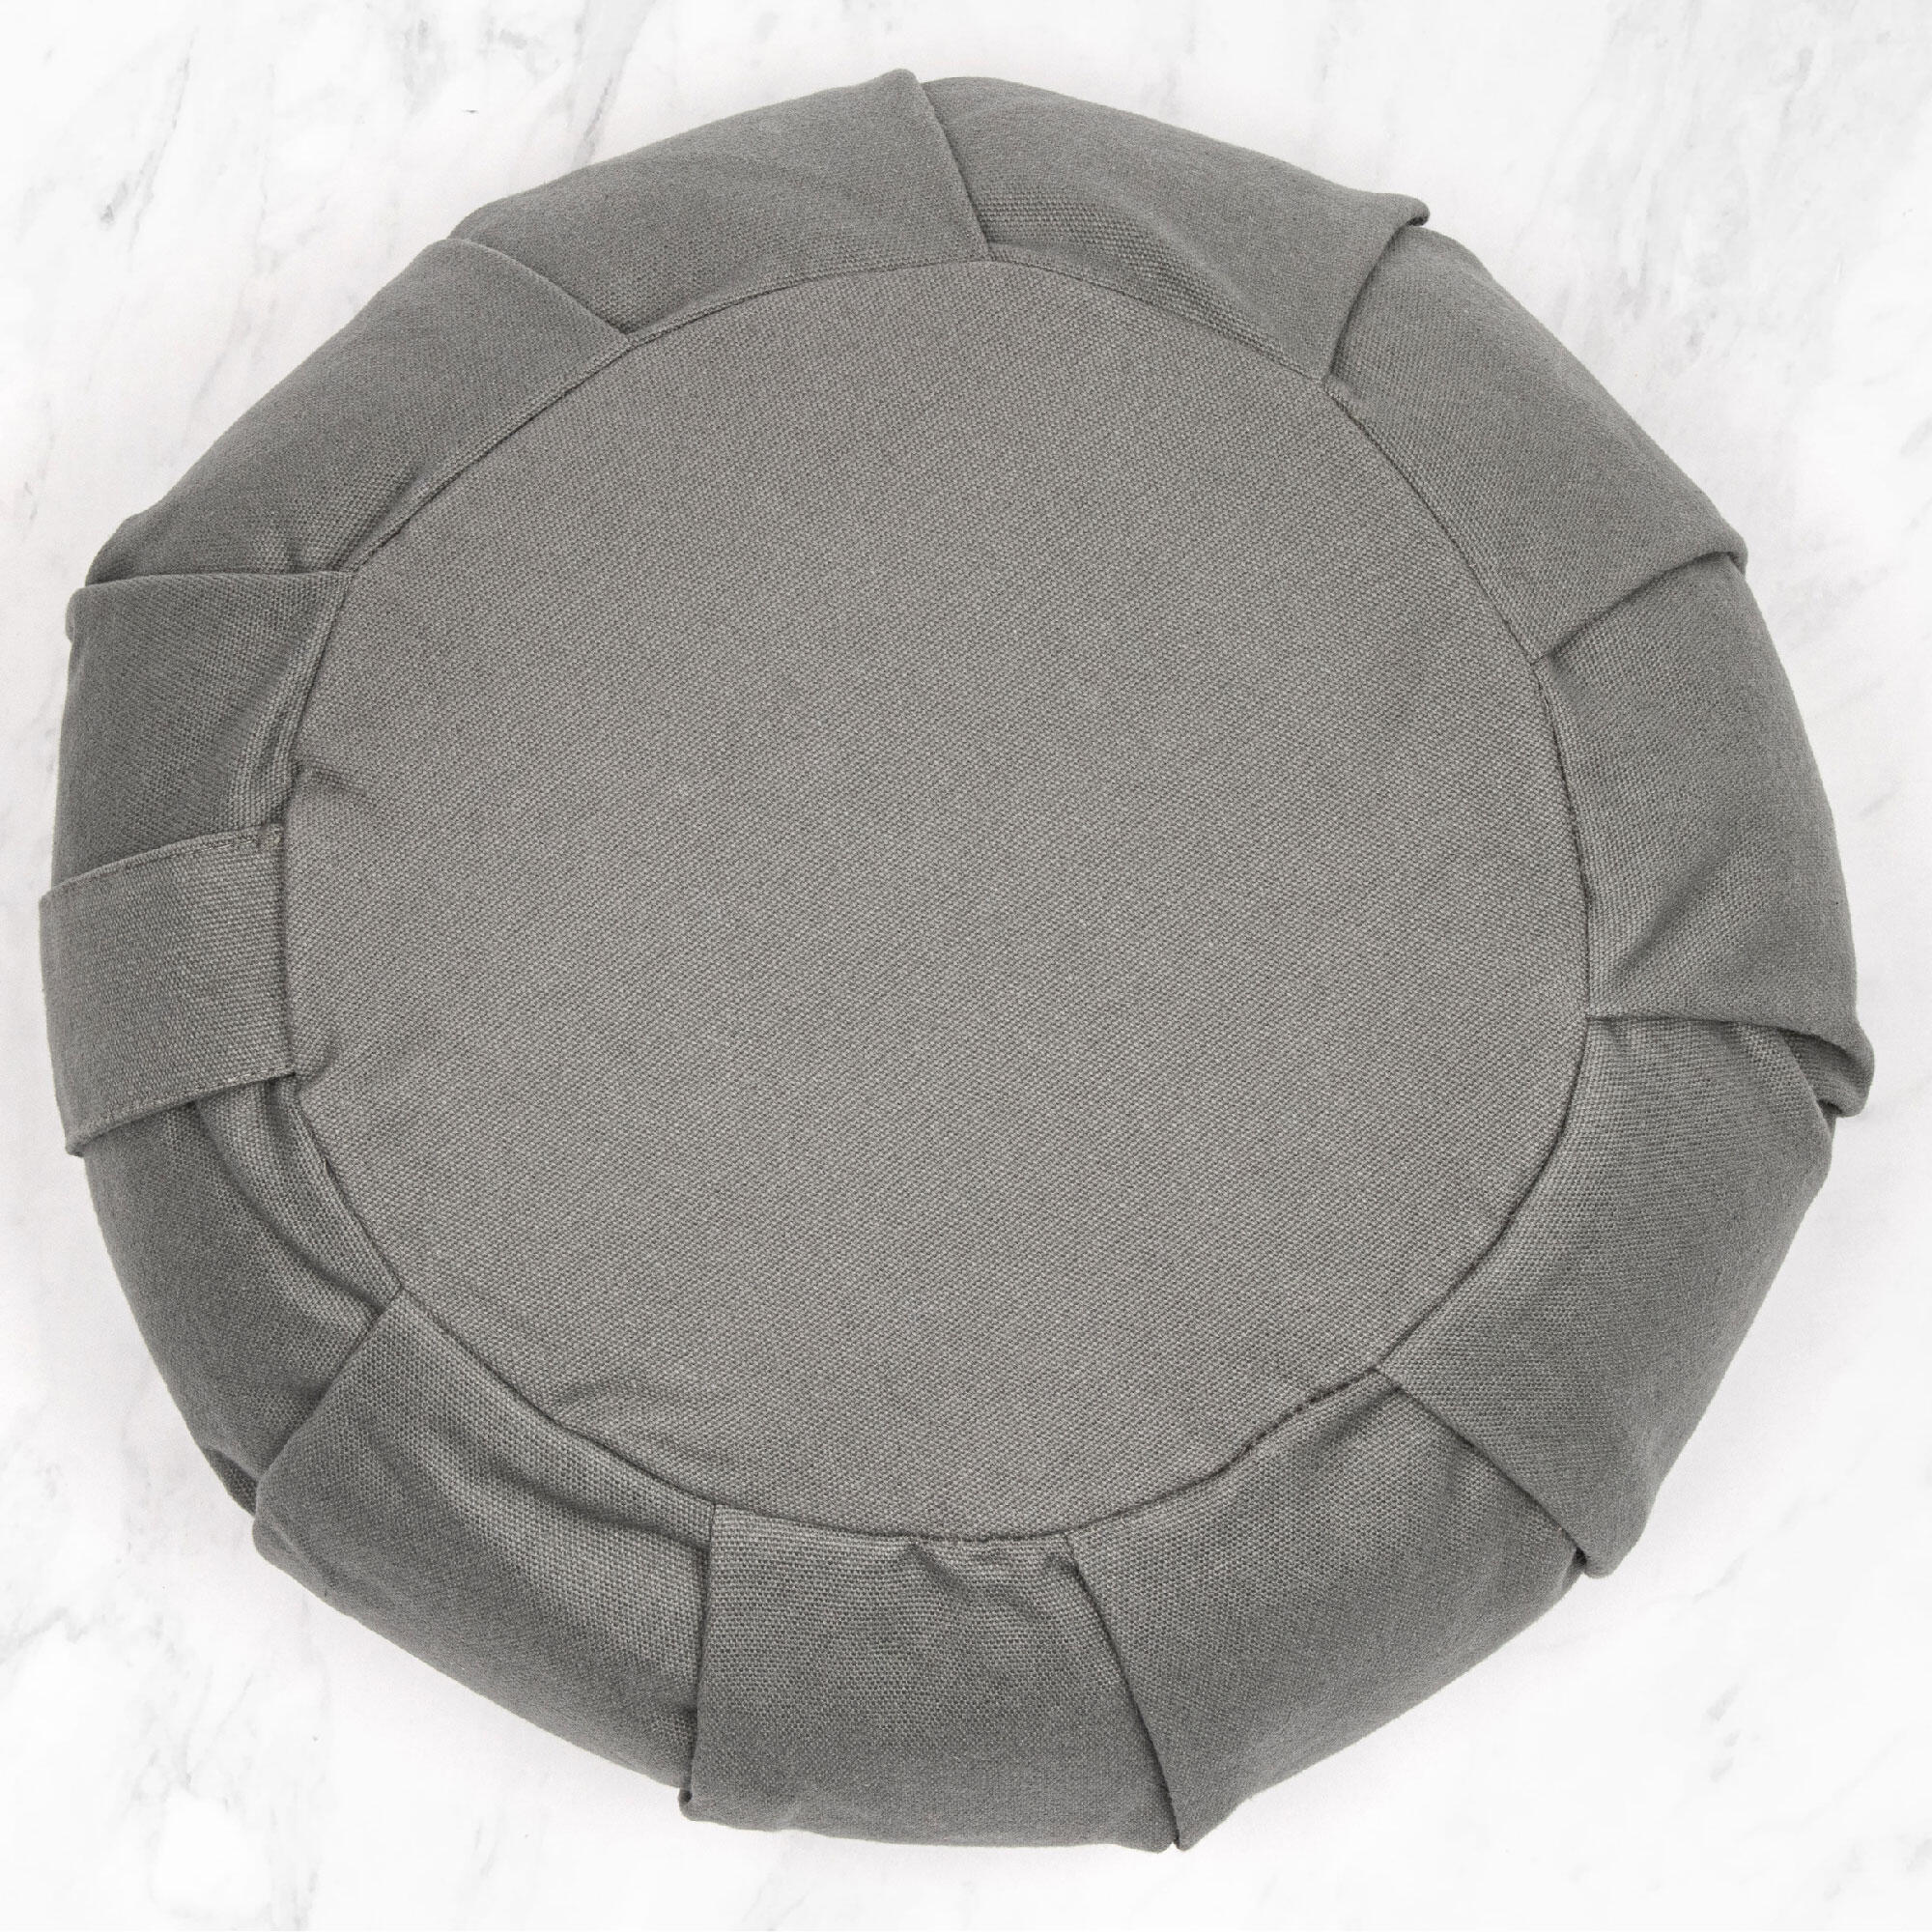 Myga Zafu Meditation Cushion - Grey 2/8